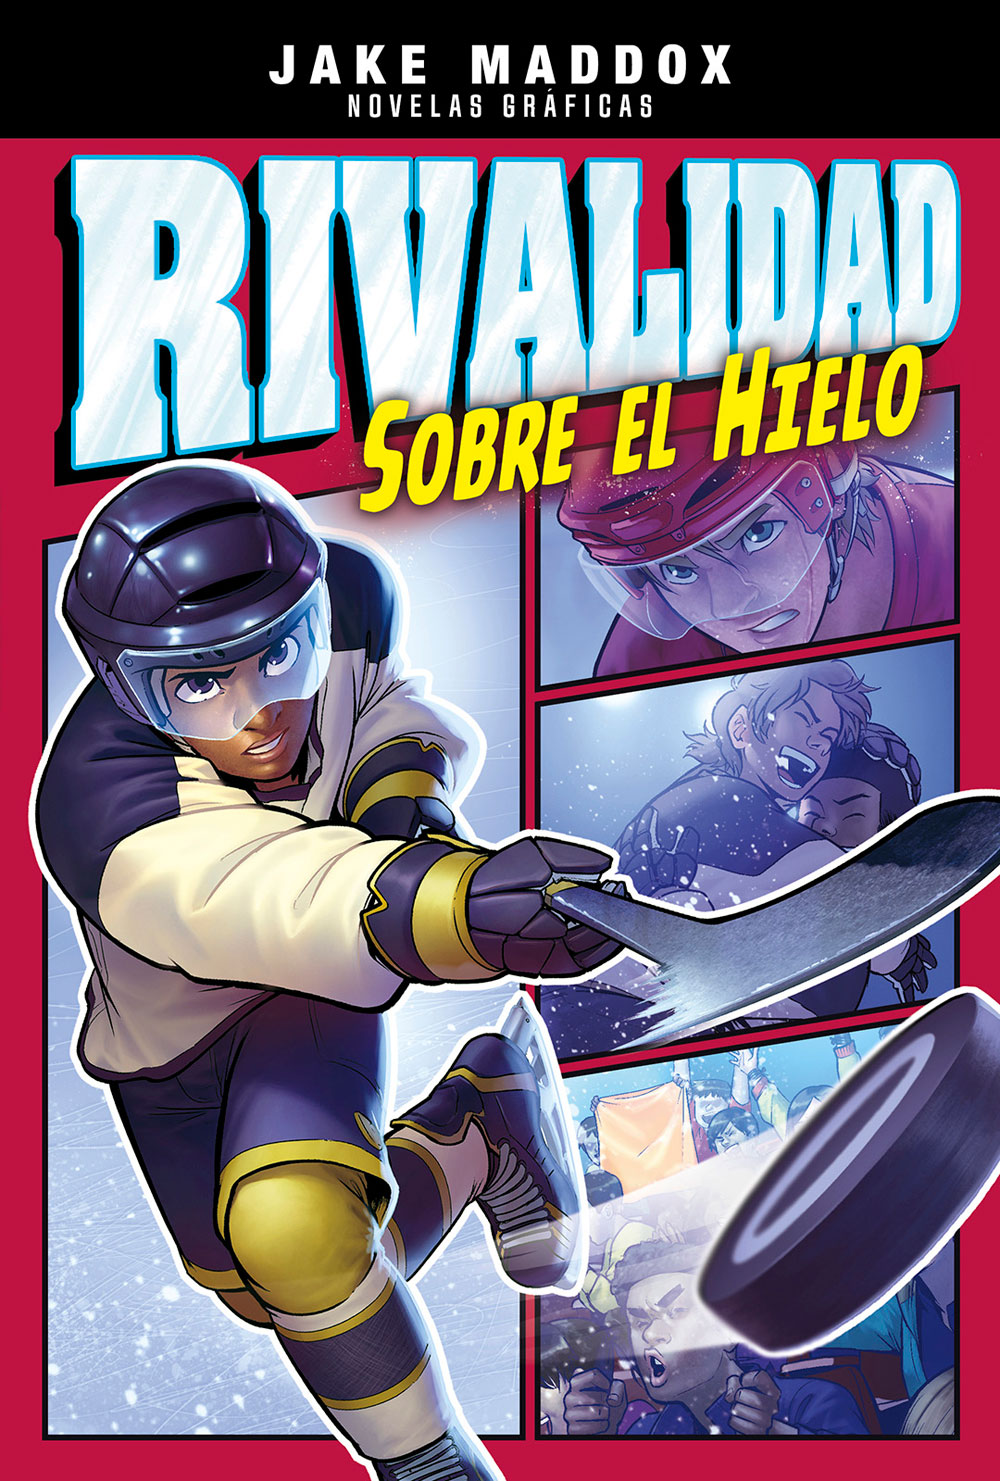 Rivalidad sobre el hielo Spanish Level 4+ Graphic Reader